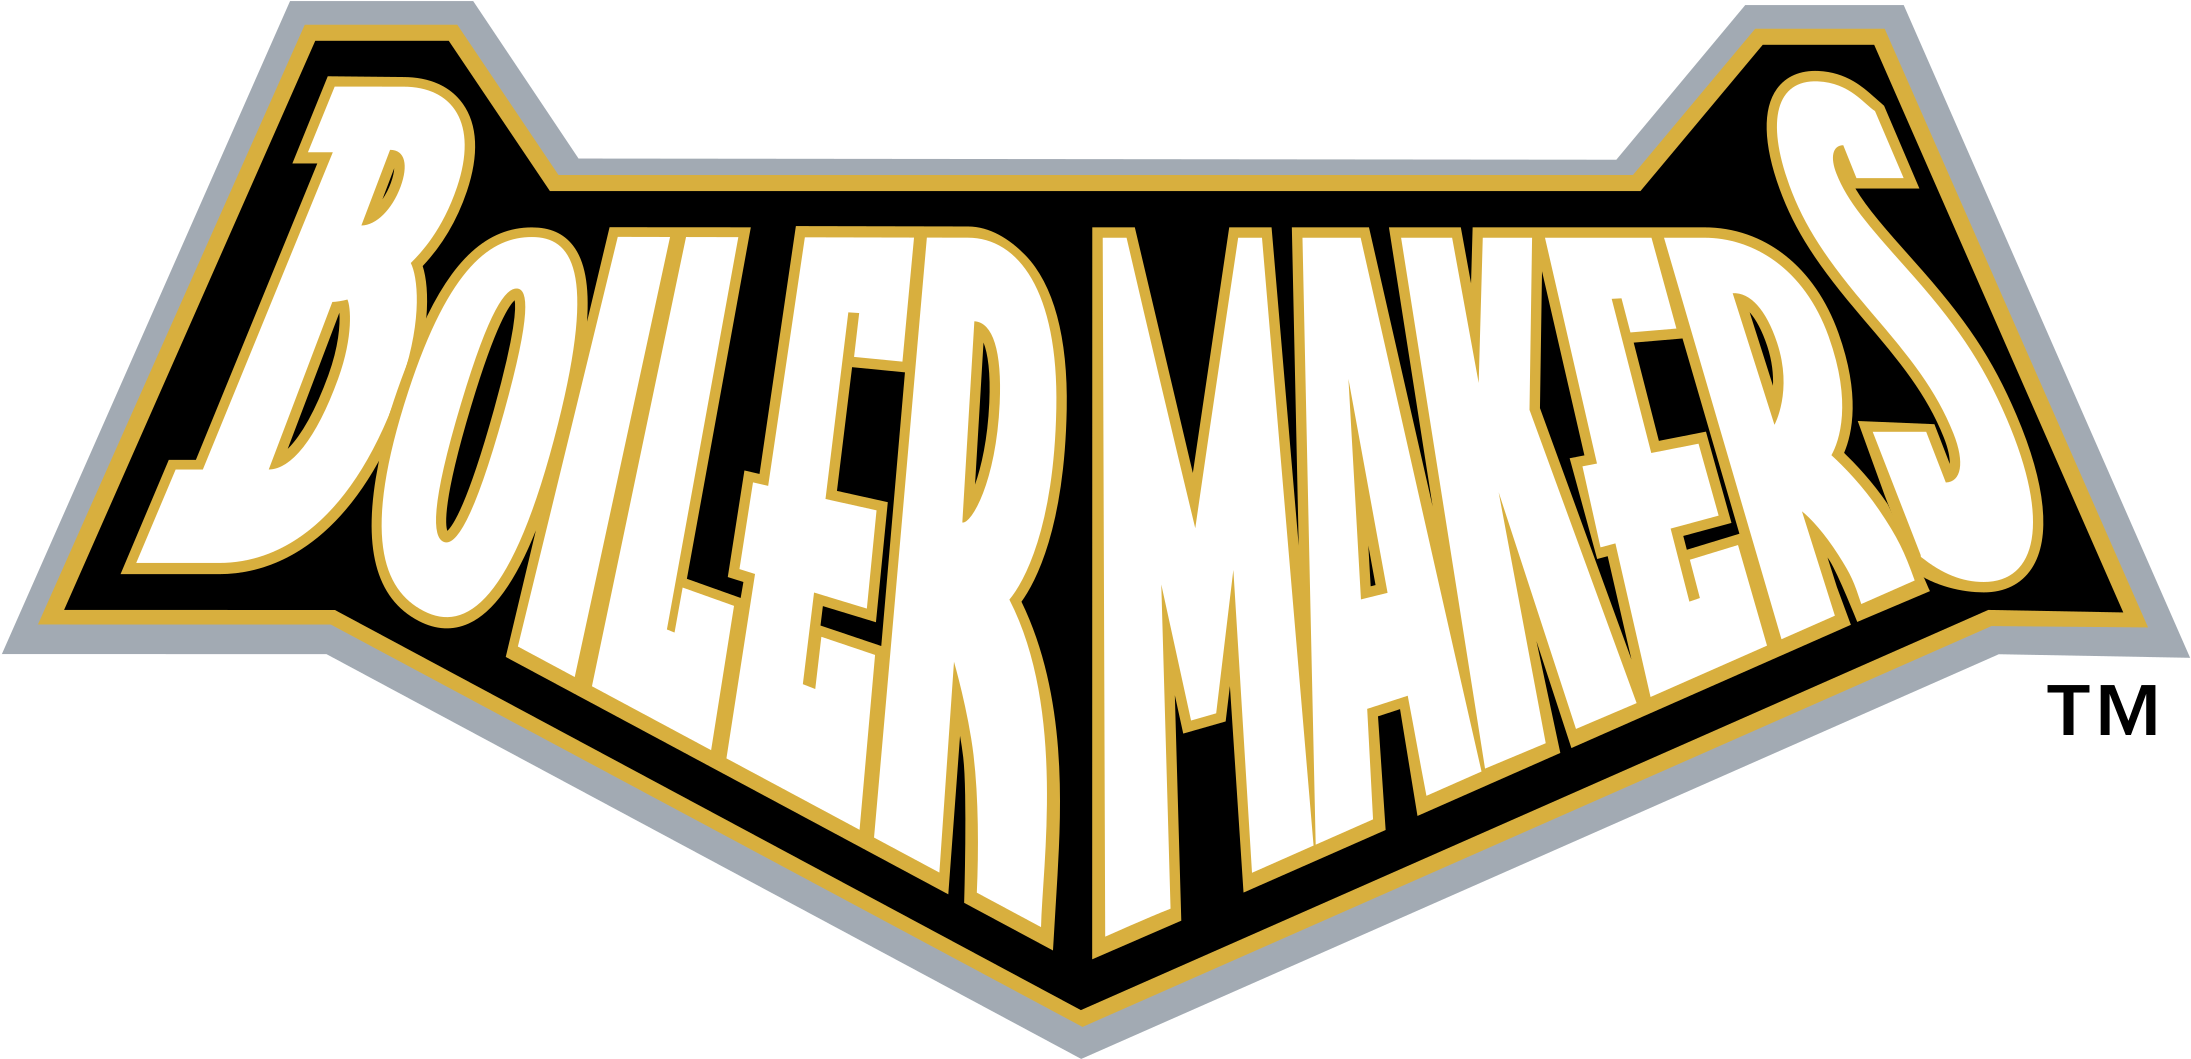 Purdue University Boilermakers Logo Black And White - Purdue University Boilermakers Logo (2400x2400)